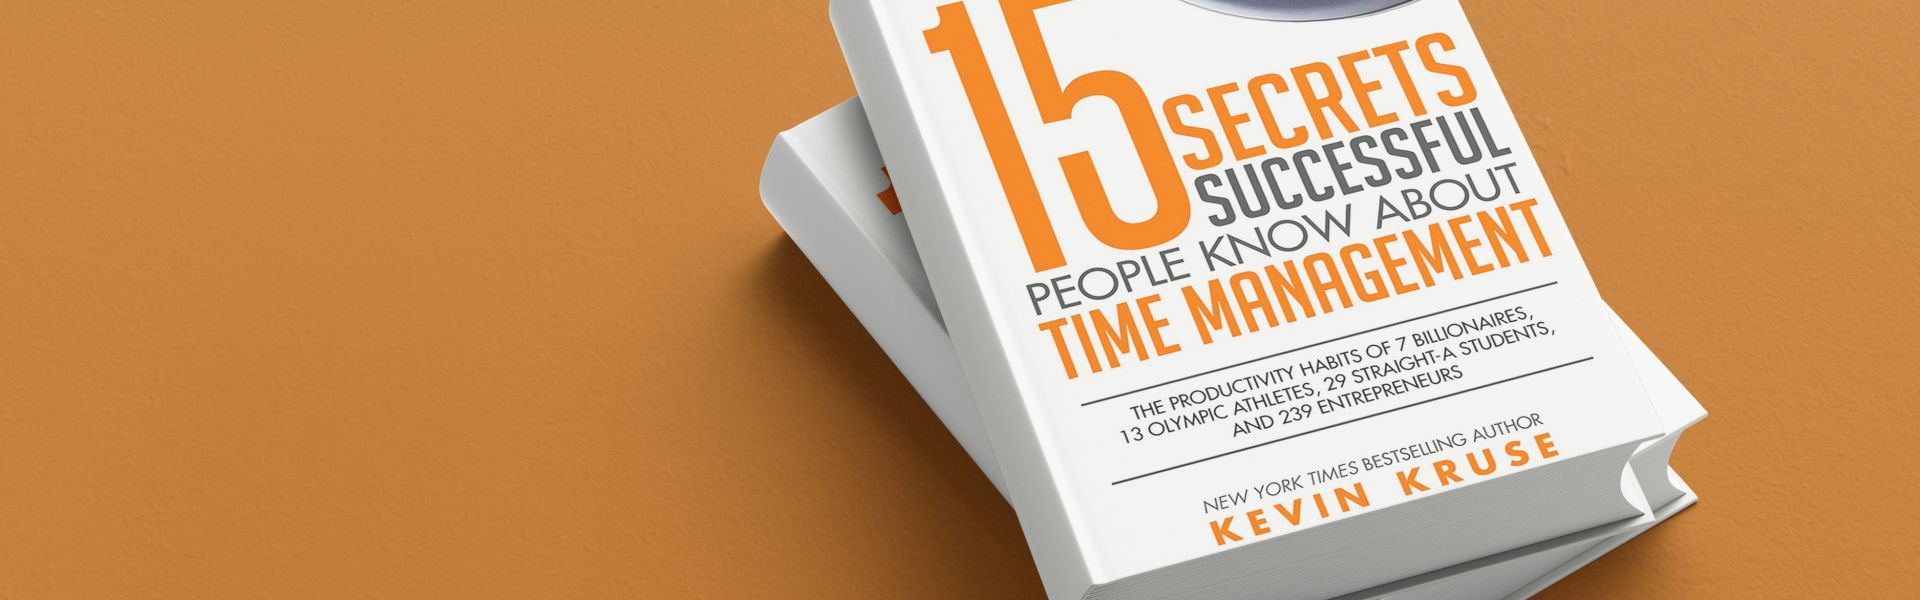 De 15 geheimen over timemanagement (samenvatting)